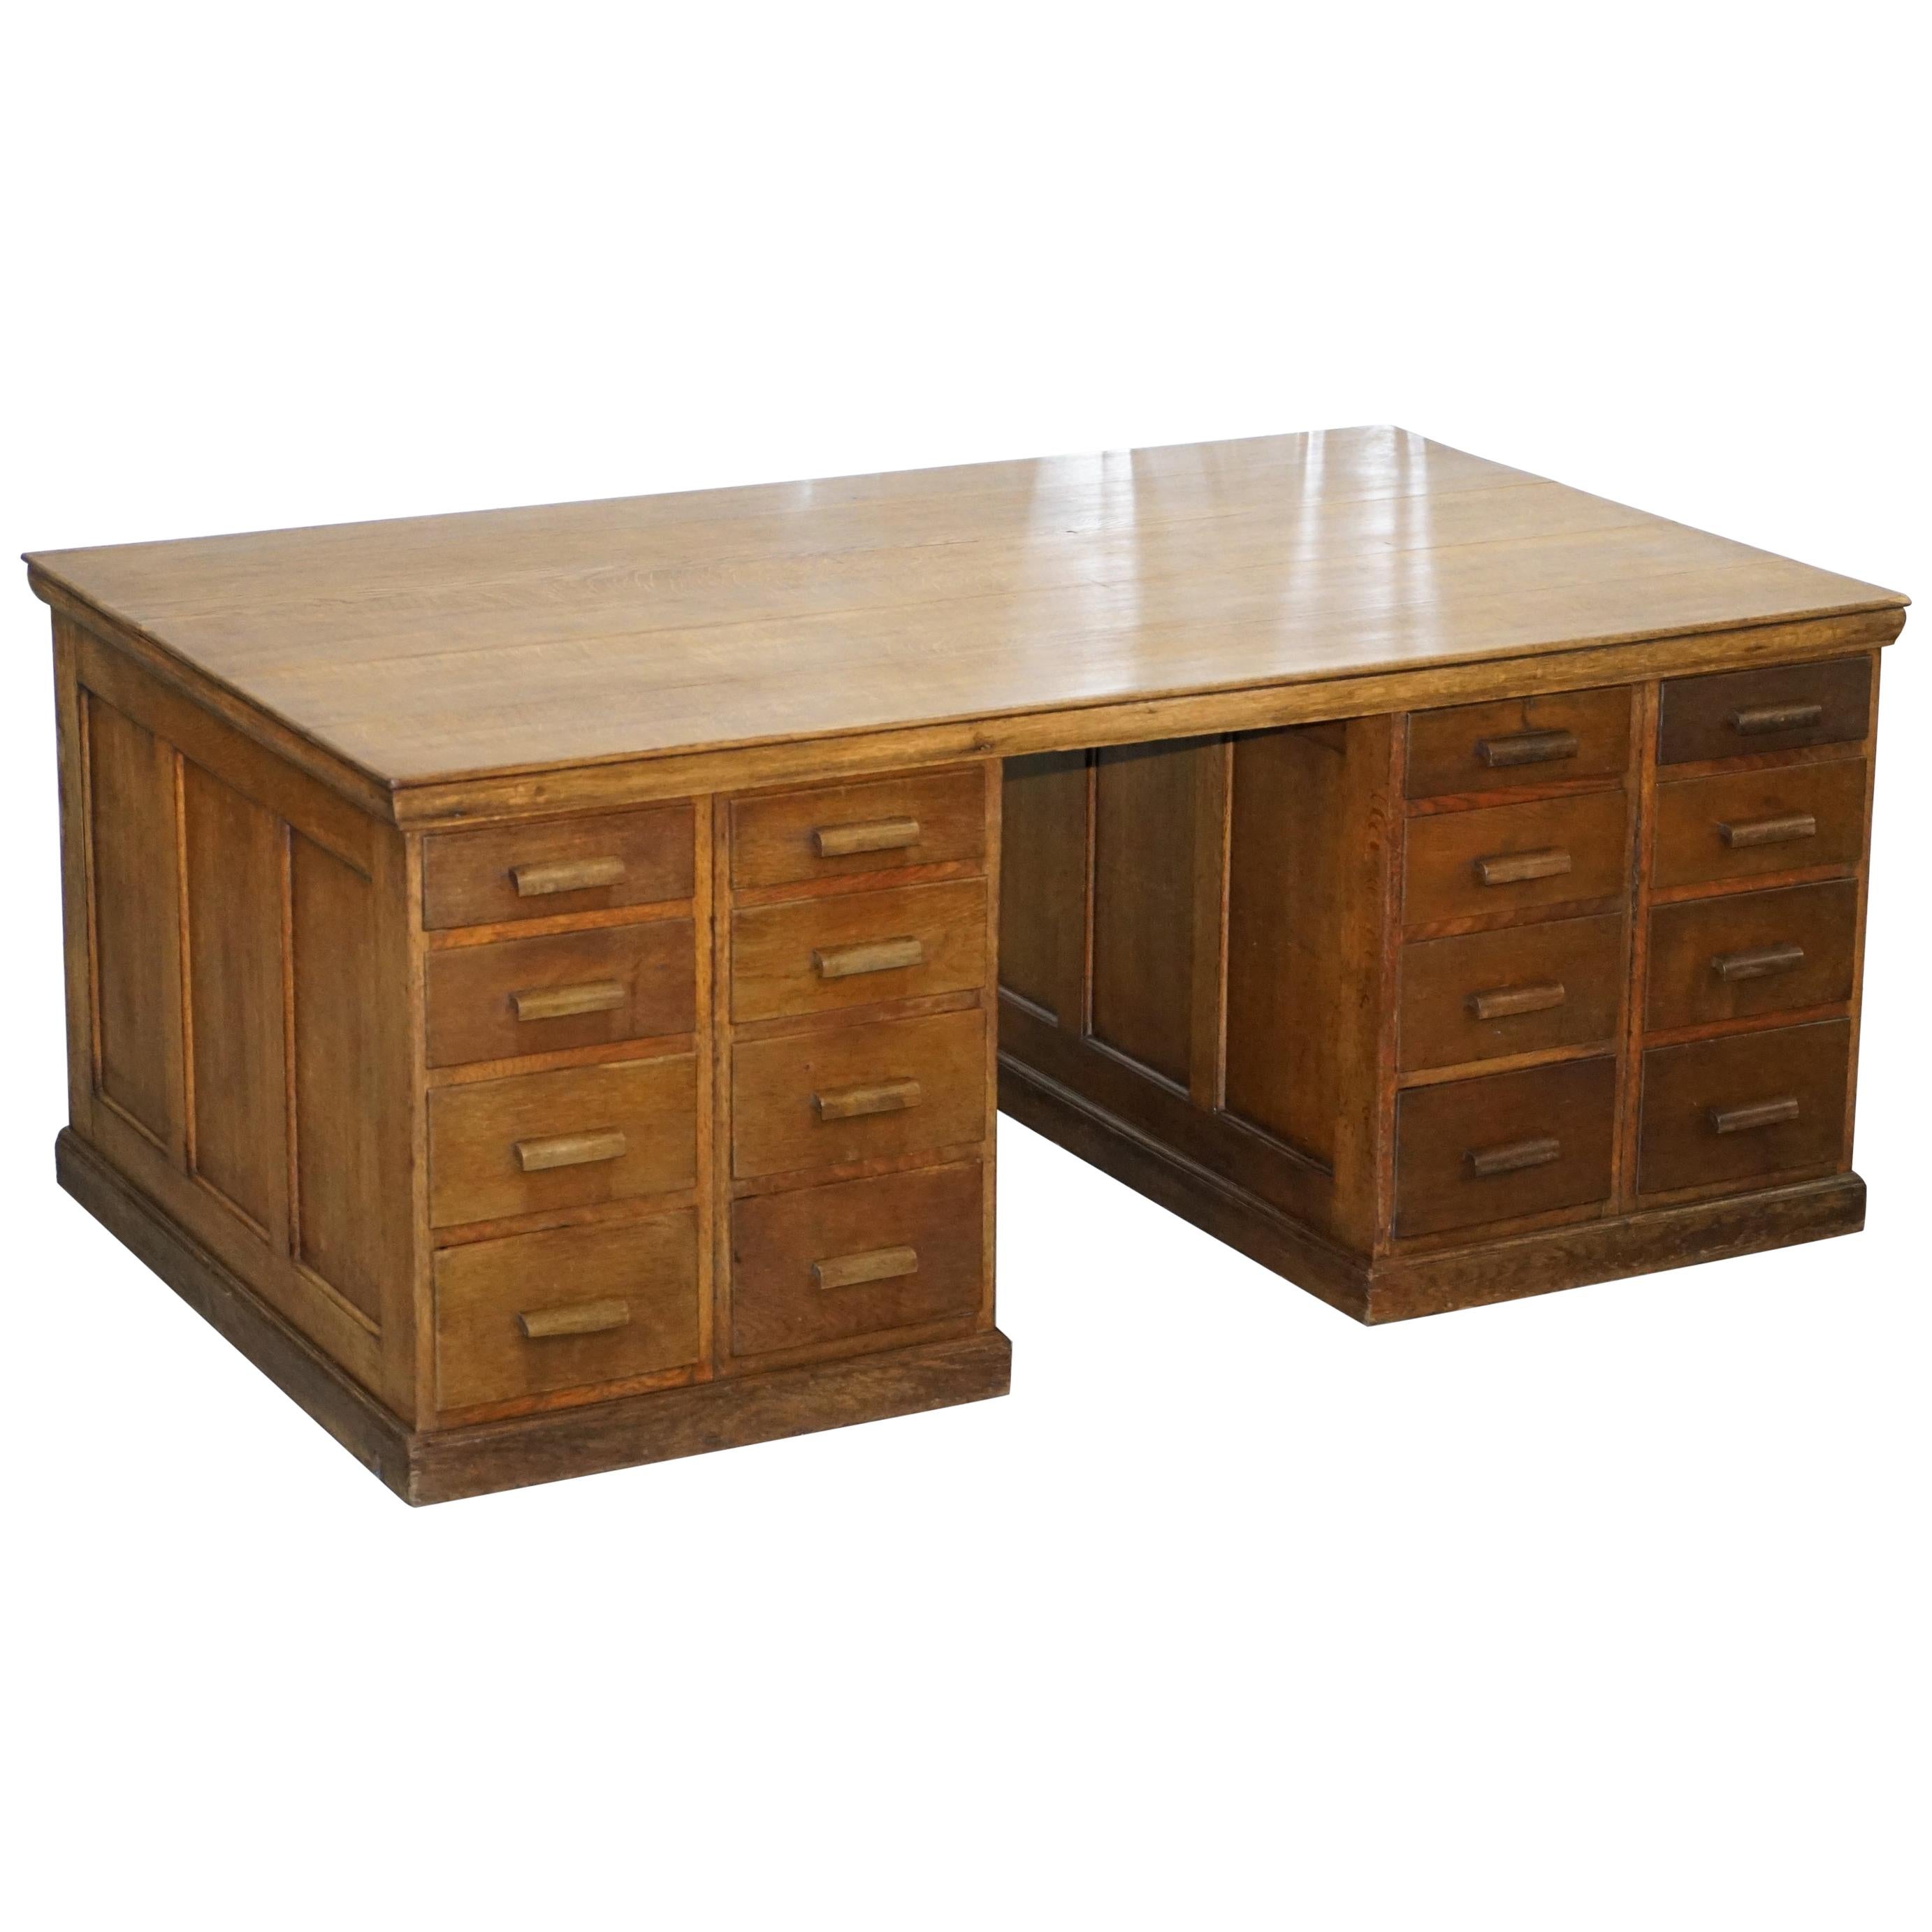 32 Drawers Double Sided Twin Pedestal Oak Partners Desk Haberdashery Edwardian